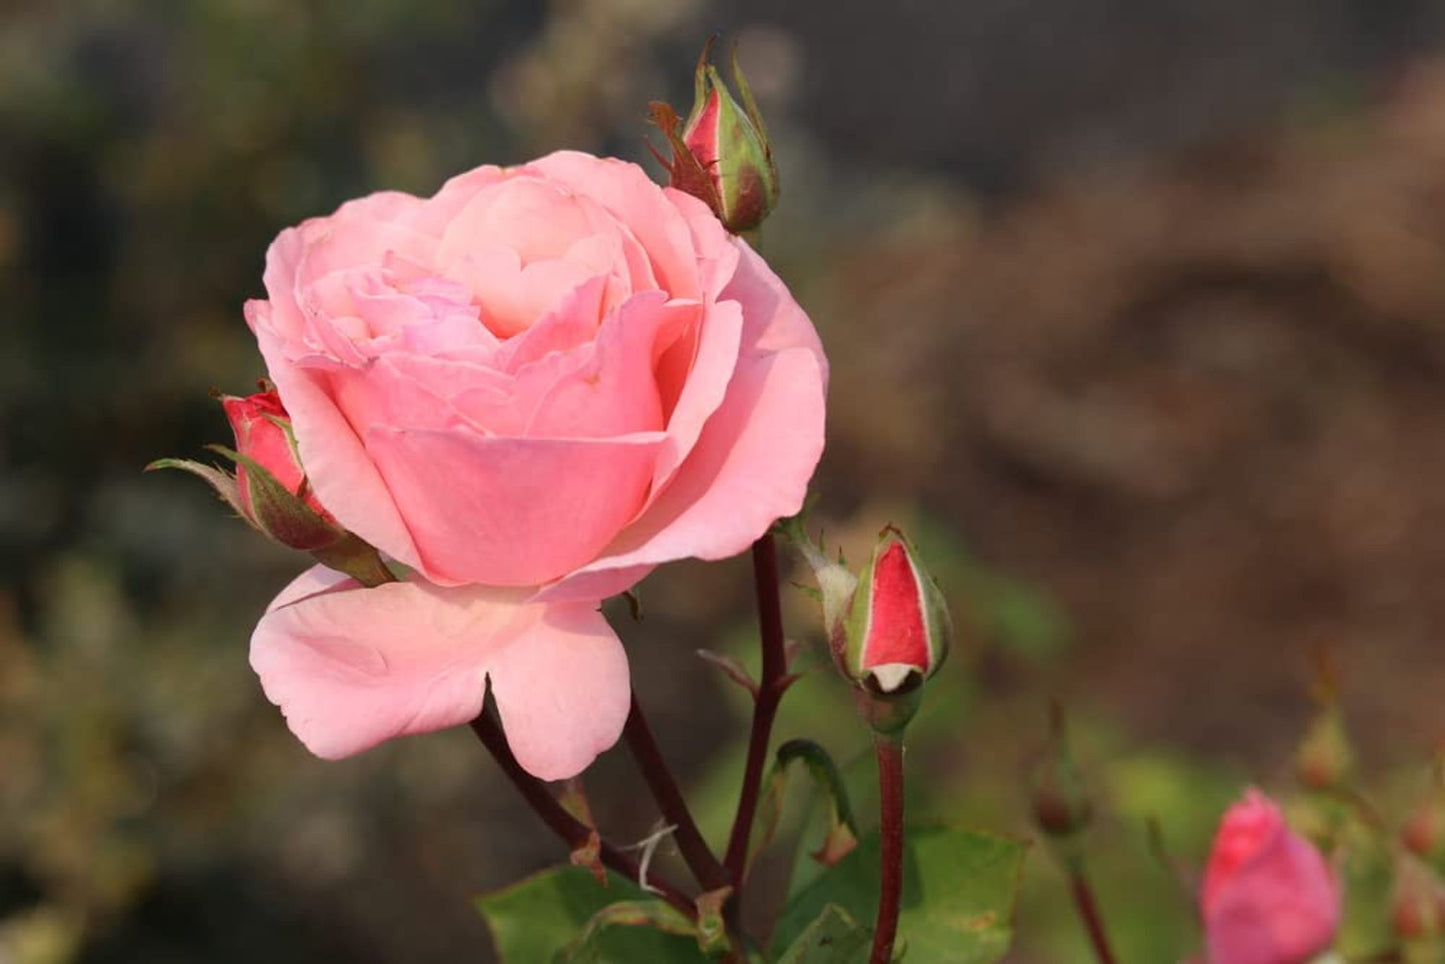 Rose Plants - Floribunda - 'Queen Elizabeth' - 1 x Full Plant in 5L Pot - AcquaGarden